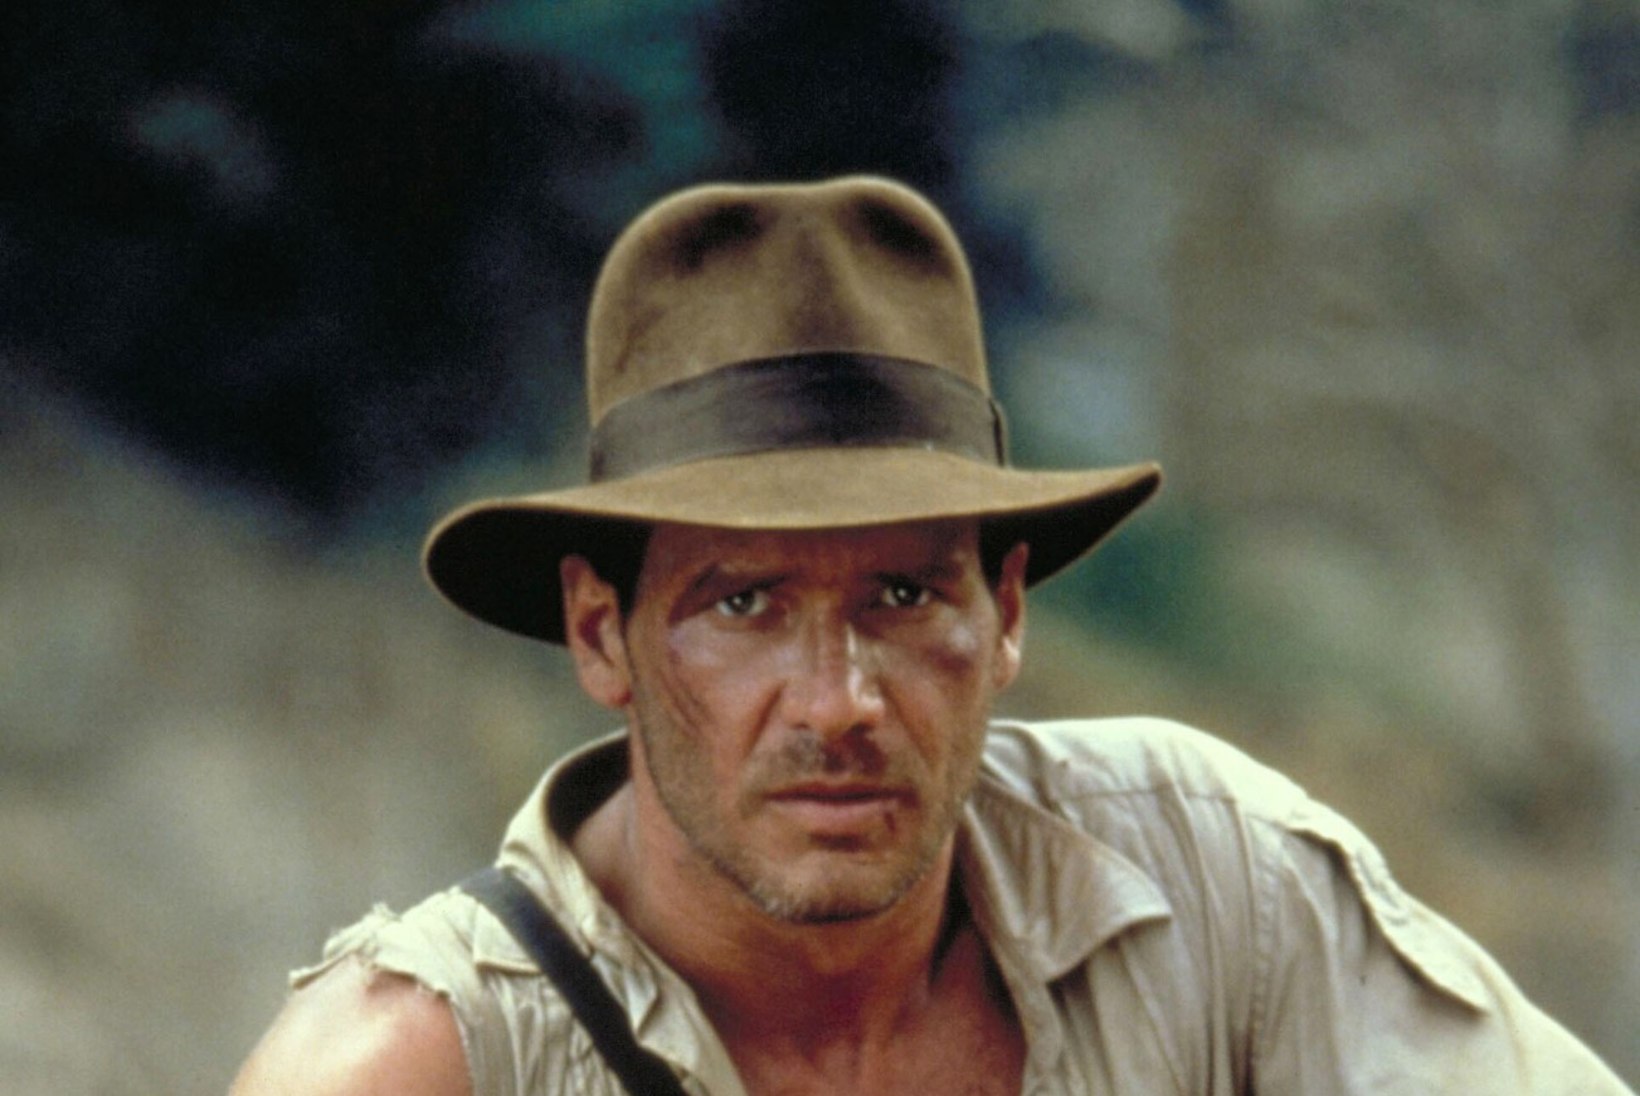 Indiana Jones või James Bond  – kumb on kõvem mees?